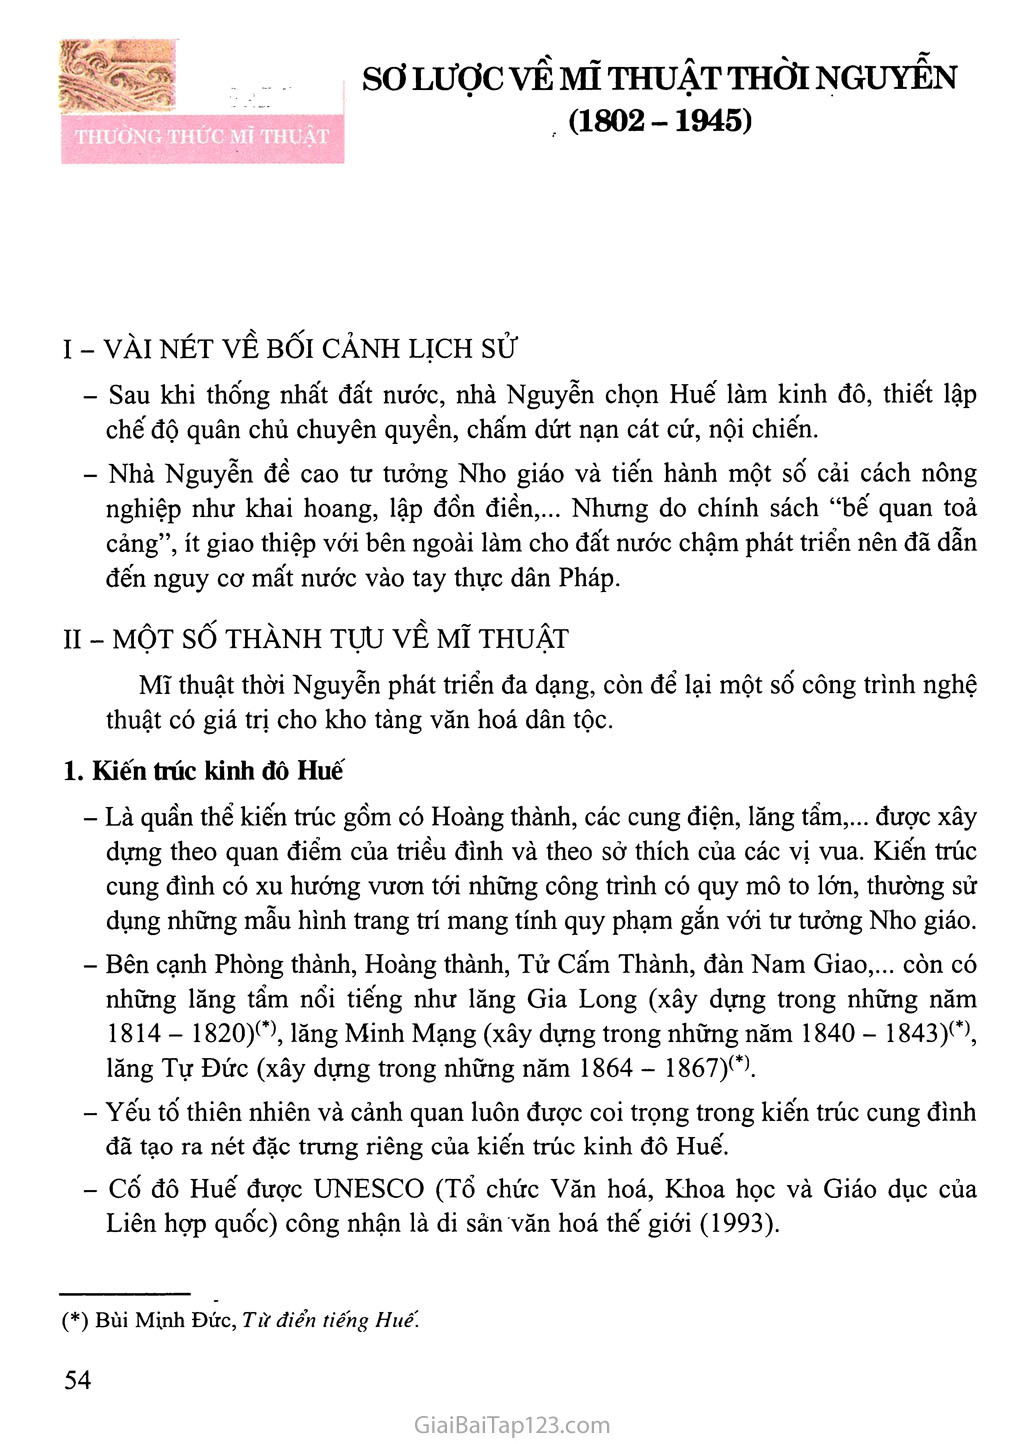 Bài 1 Thưởng thức mĩ thuật Sơ lược về mĩ thuật thời Nguyễn (1802-1945) trang 1